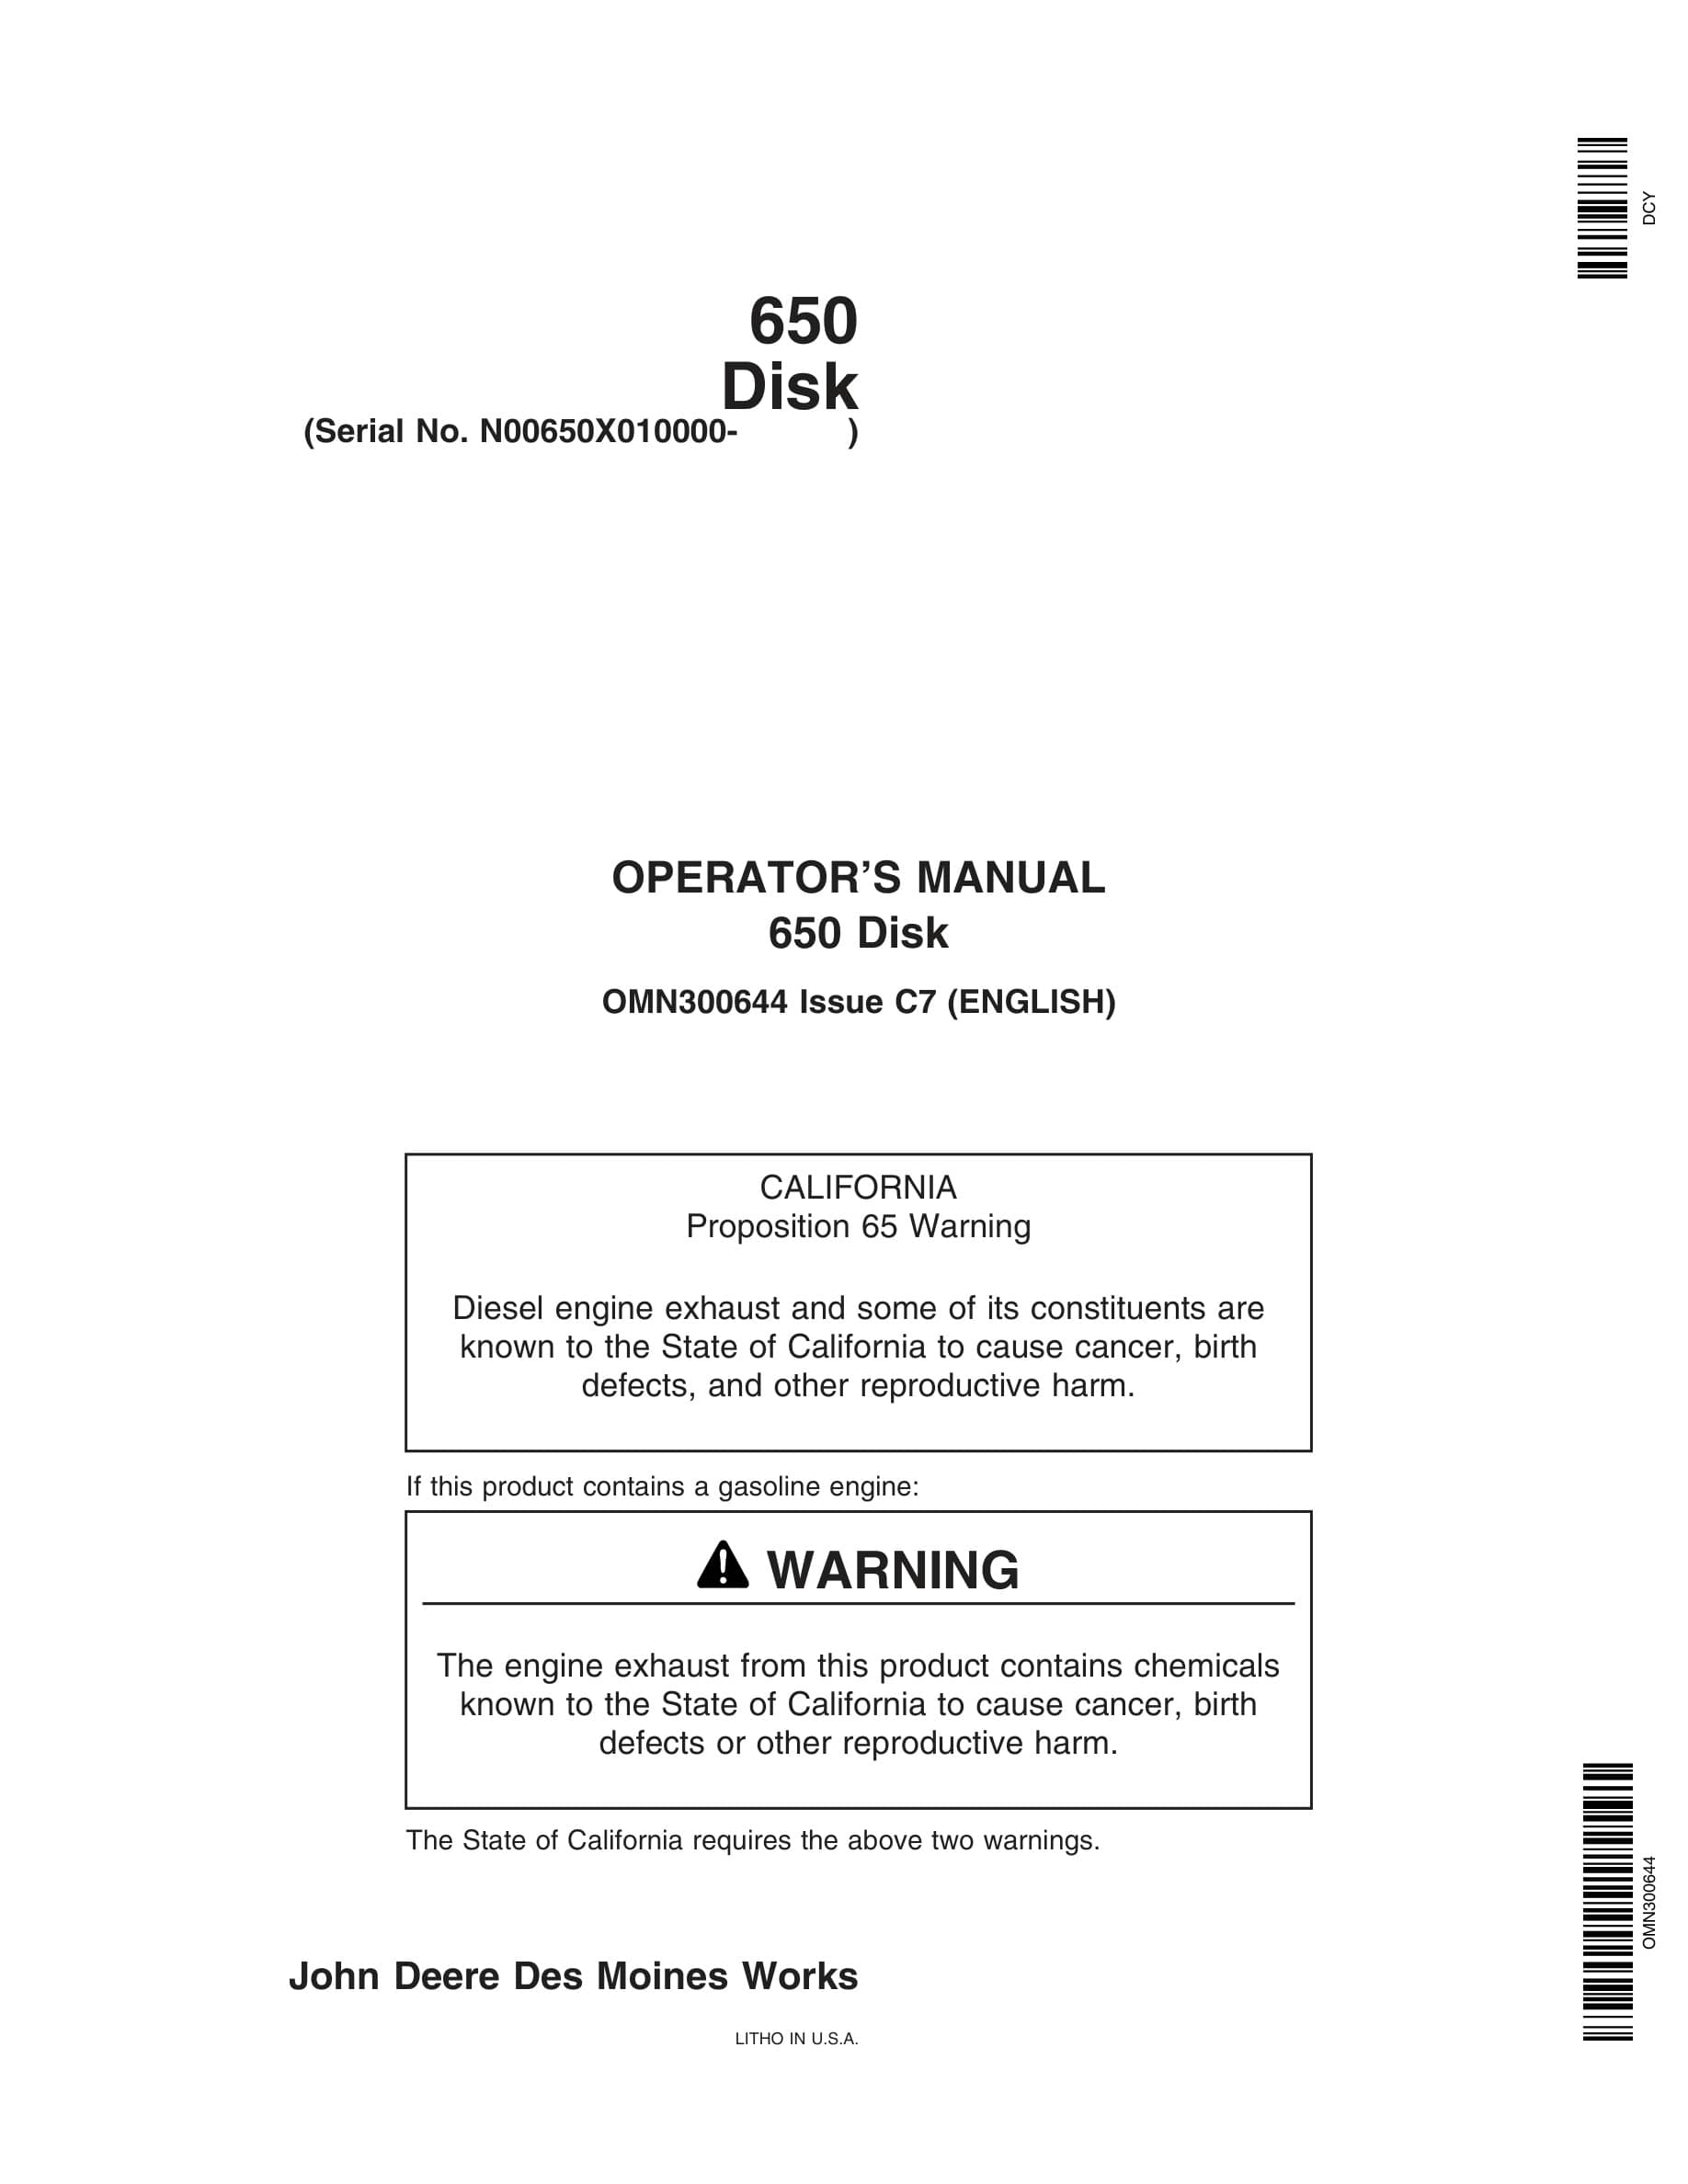 John Deere 650 Disk Operator Manual OMN300644-1